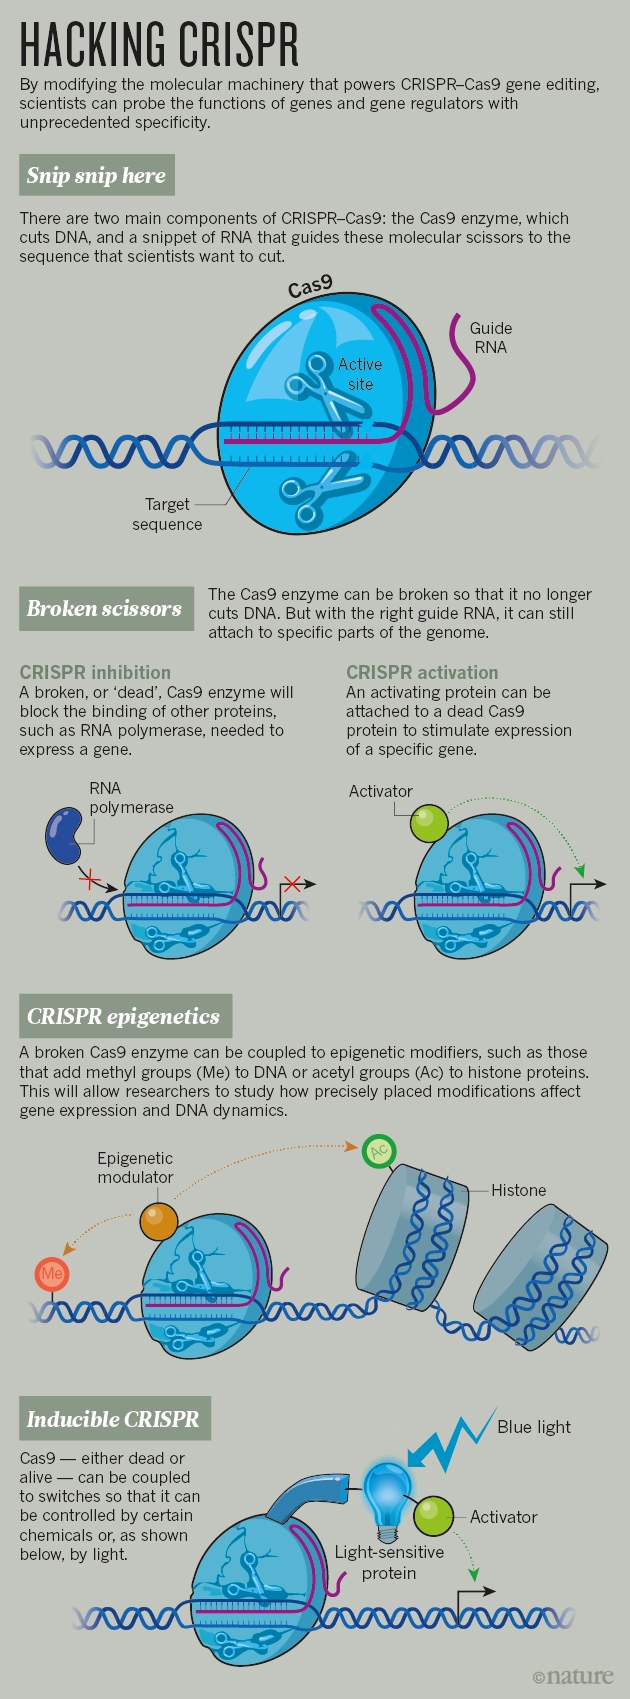 유전자가위 원리와 개발과정- 크리스퍼(Crispr-Cas9, Cpf1) : 네이버 블로그